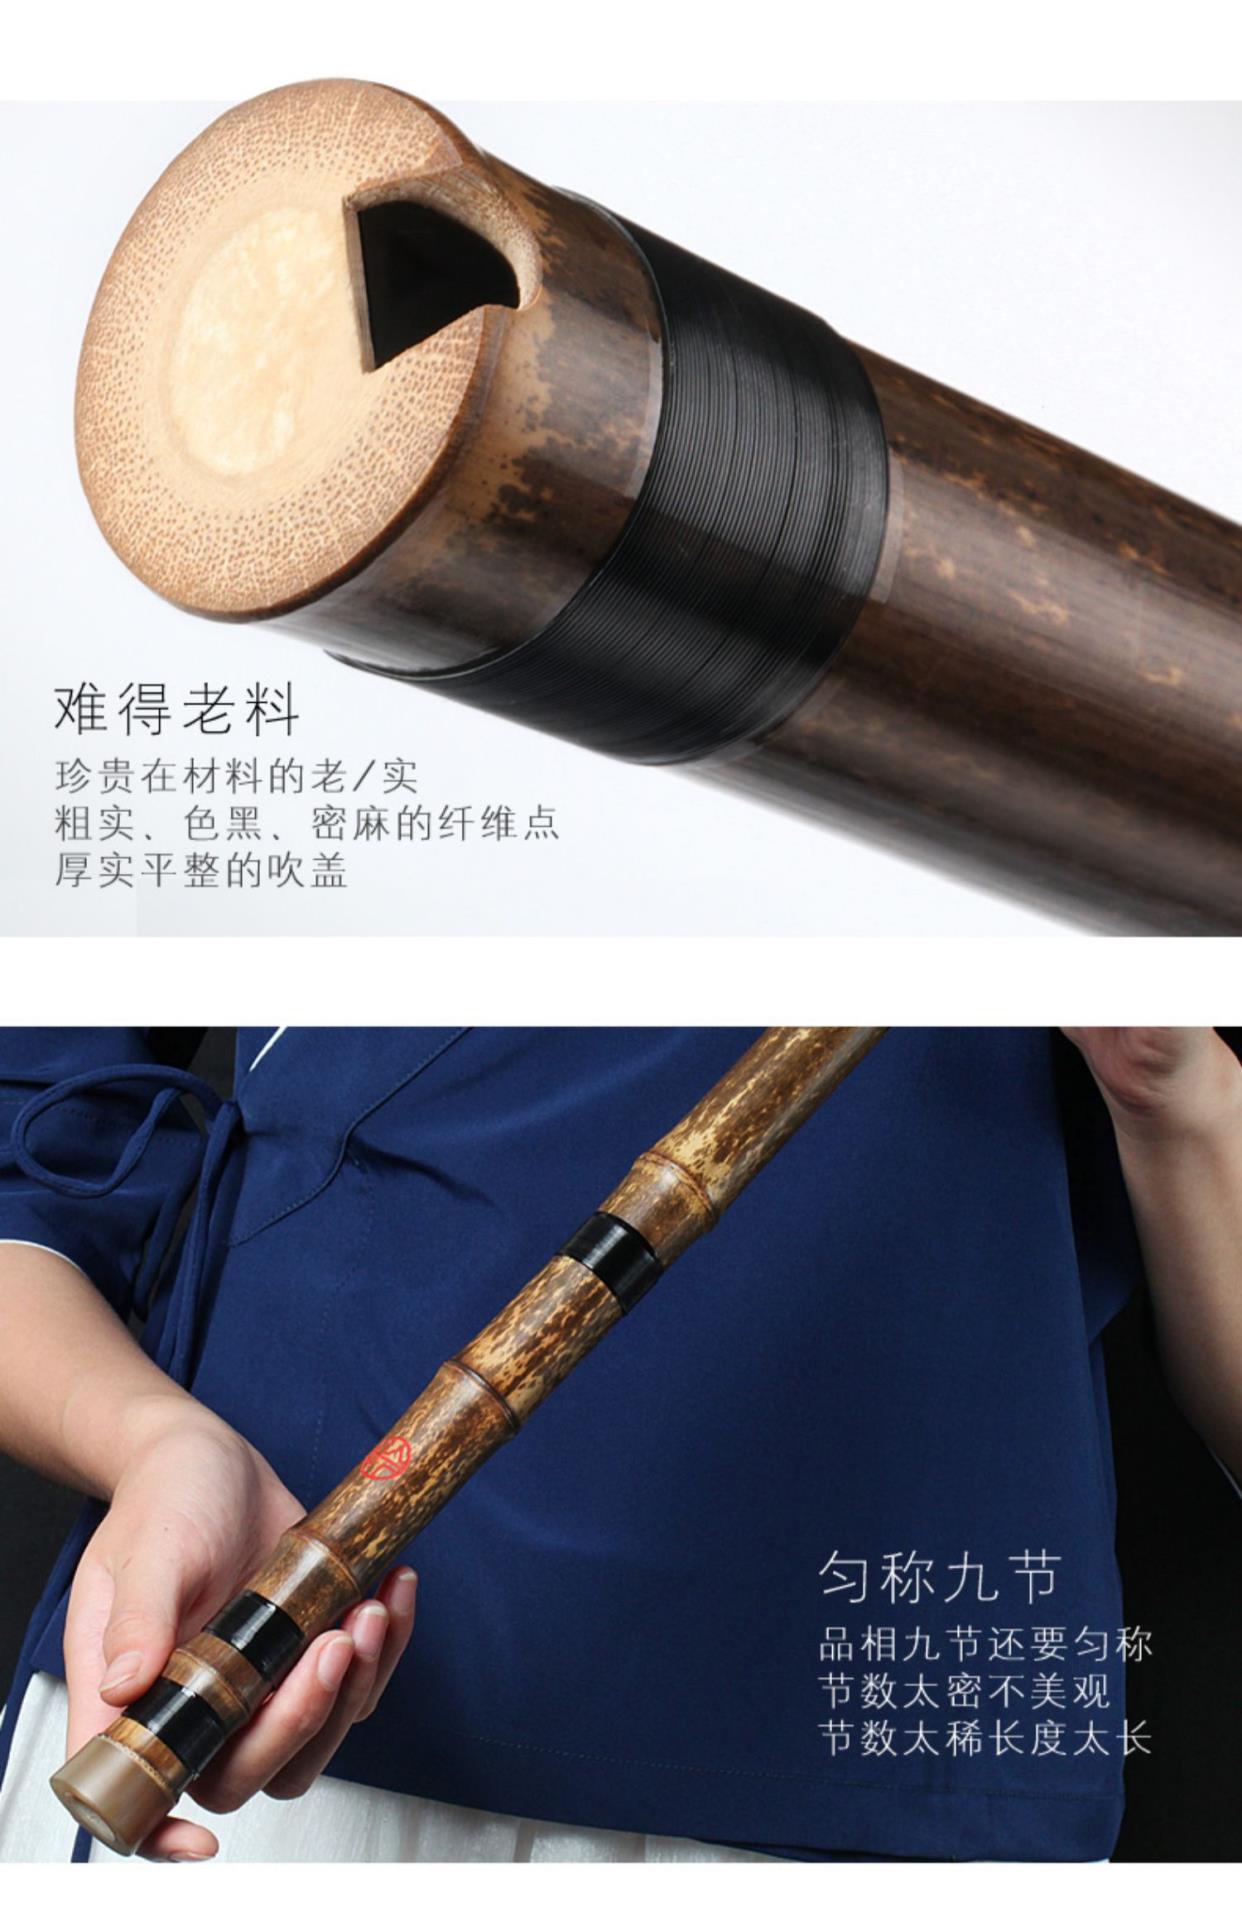 Lingyin cao cấp trình diễn chuyên nghiệp cấp độ Dongxiao, một mảnh tre cao cấp màu tím chín mảnh nhạc cụ Xiao thuận tay và trái tay 6G tám lỗ F - Nhạc cụ dân tộc